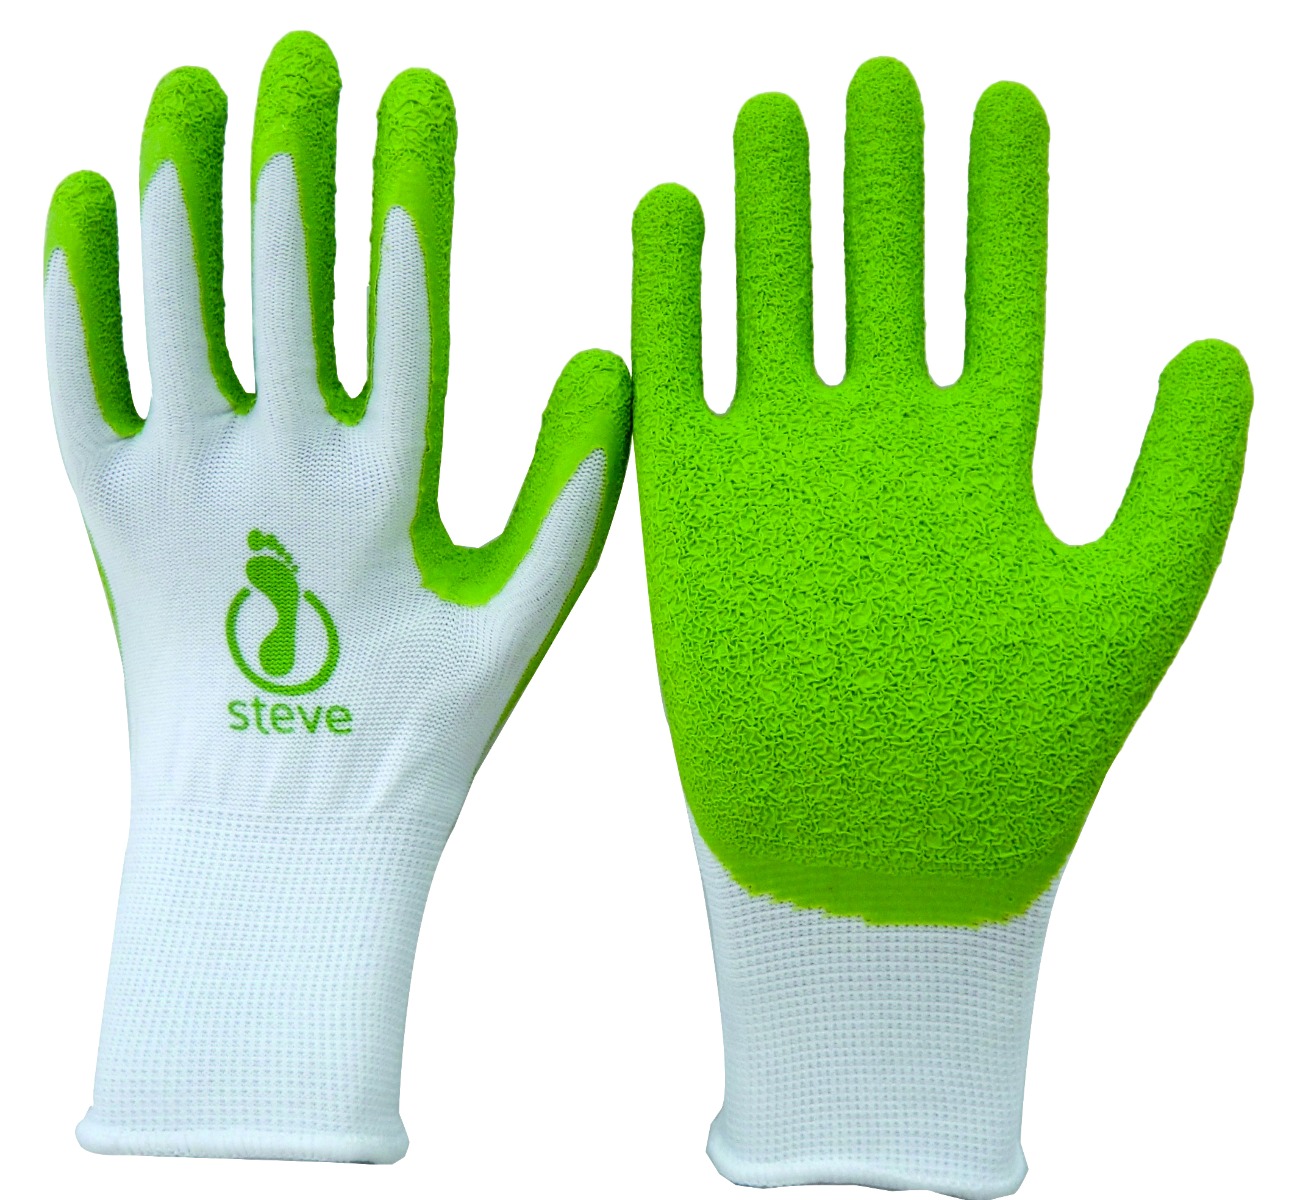 Steve+ Hosiery Application Gloves 1